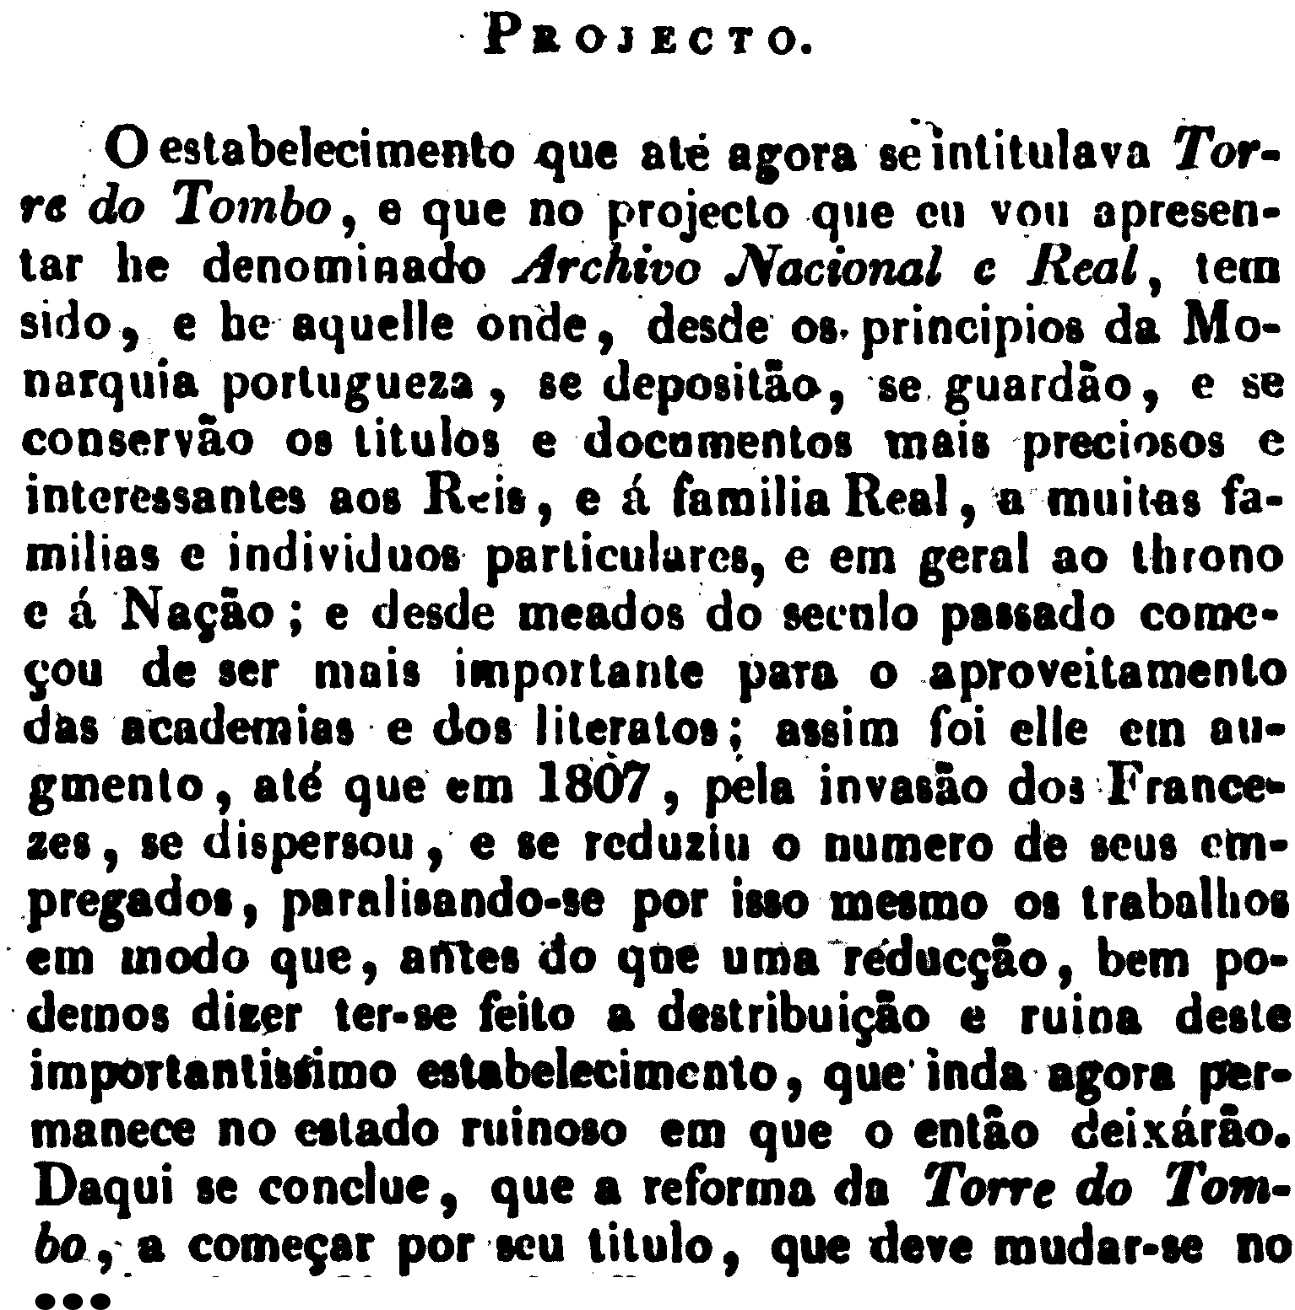 Projeto de Decreto para reforma da Torre do Tombo submetido pelo Deputado Nuno Álvares Pereira Pato Moniz num debate parlamentar em 28-12-1822